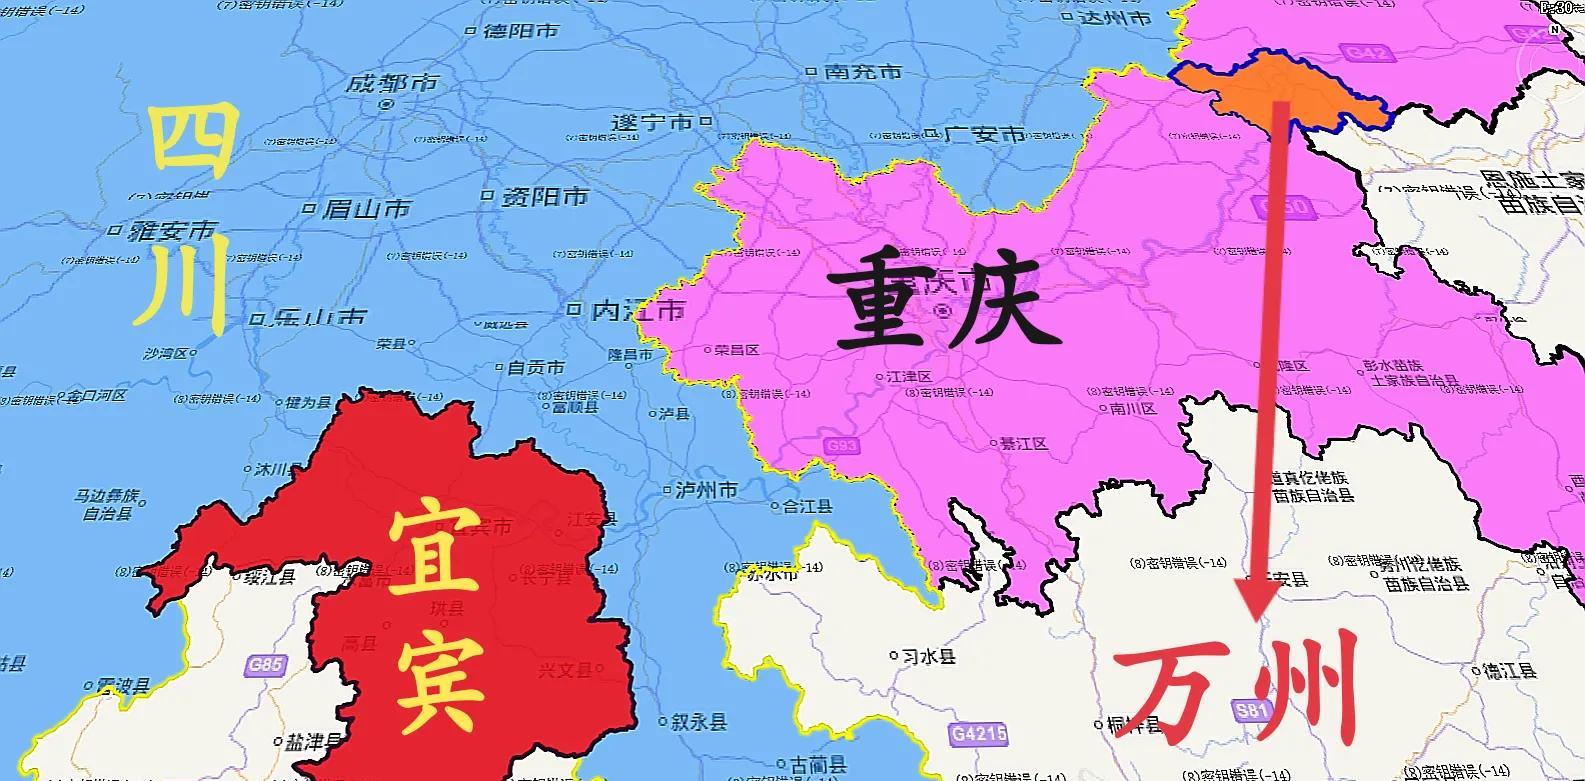 重庆万州地理位置图片